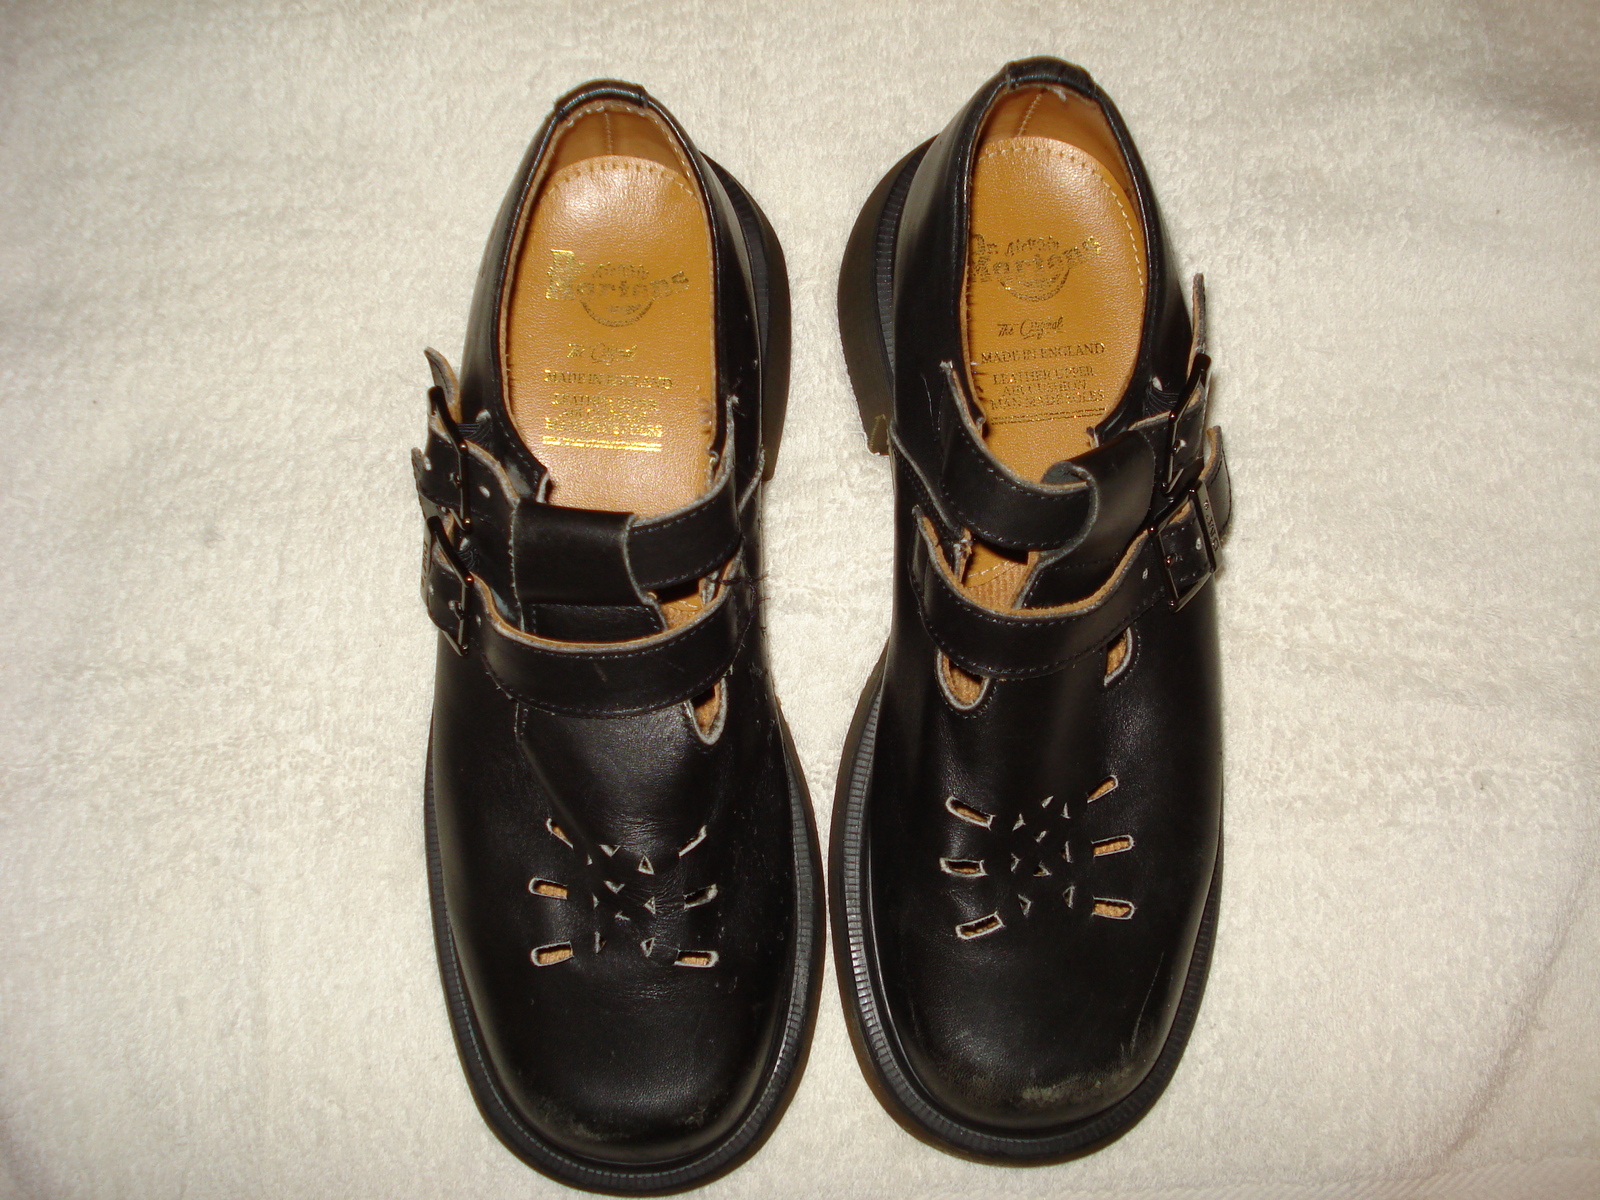 dr martens shoes size 5